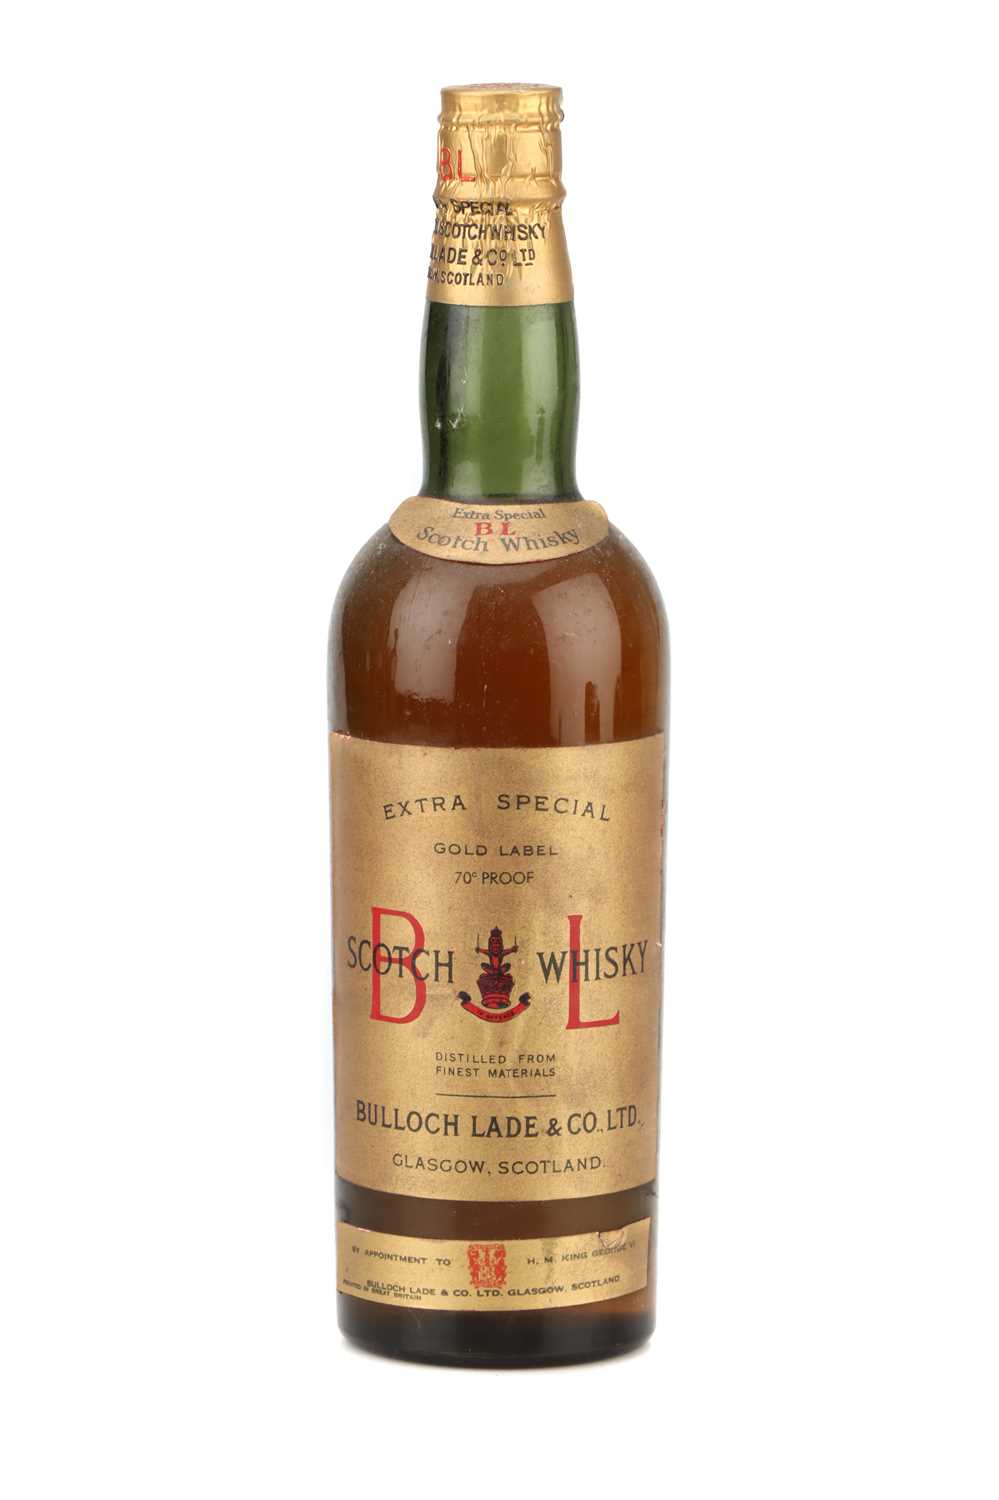 Lot 120 - Bulloch Lade & Co. Ltd. B L Gold Label